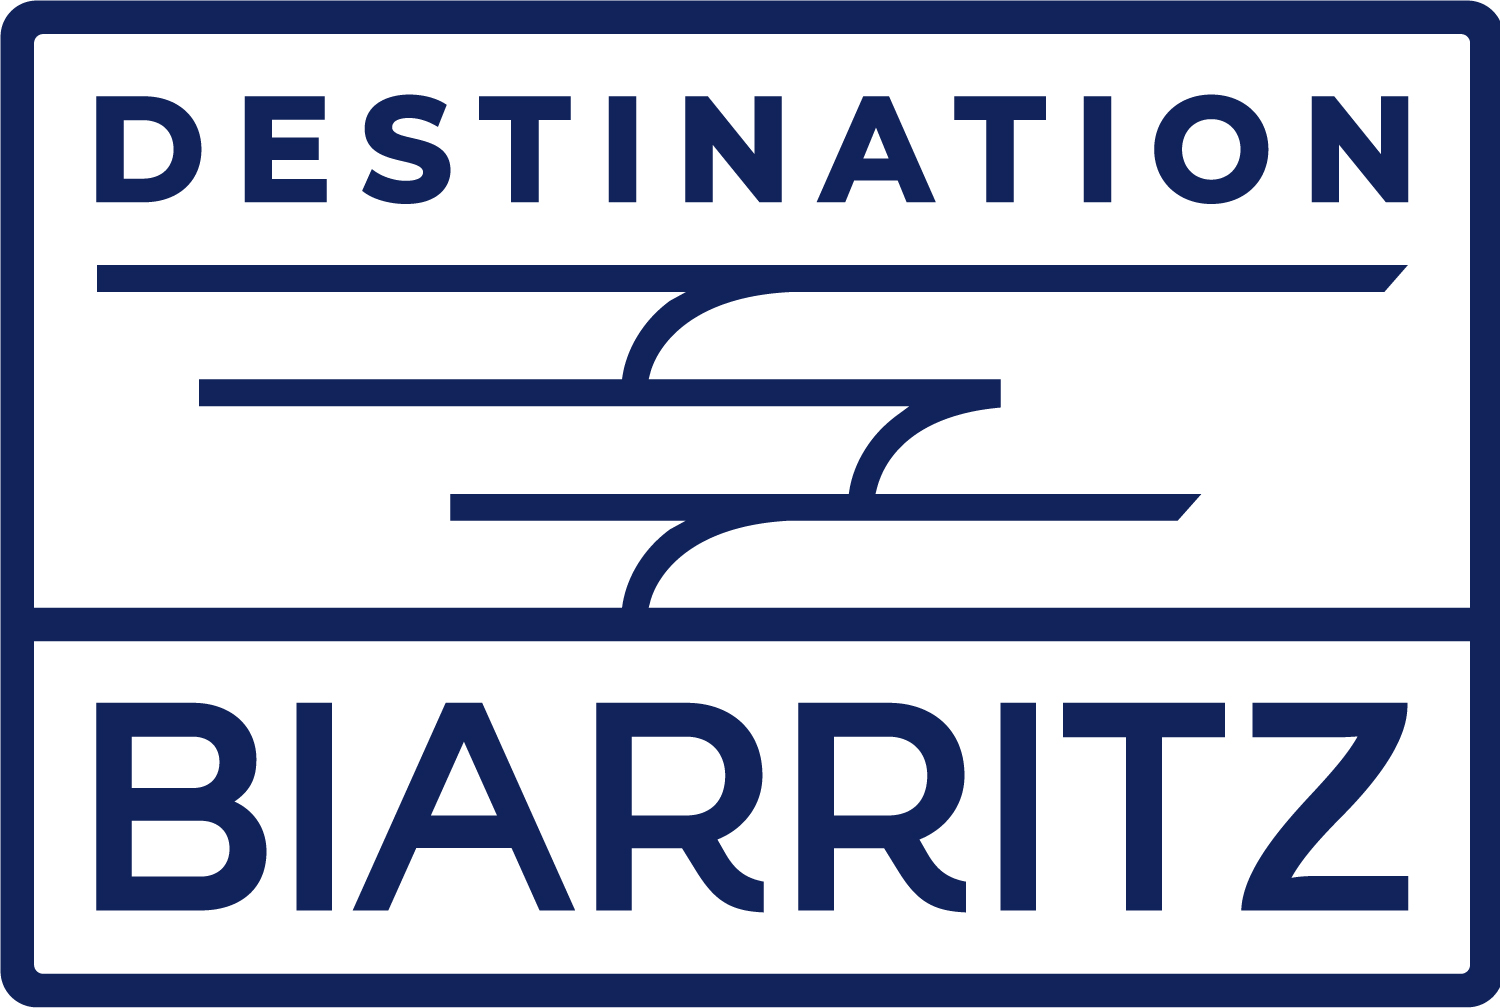 Biarritz tourisme